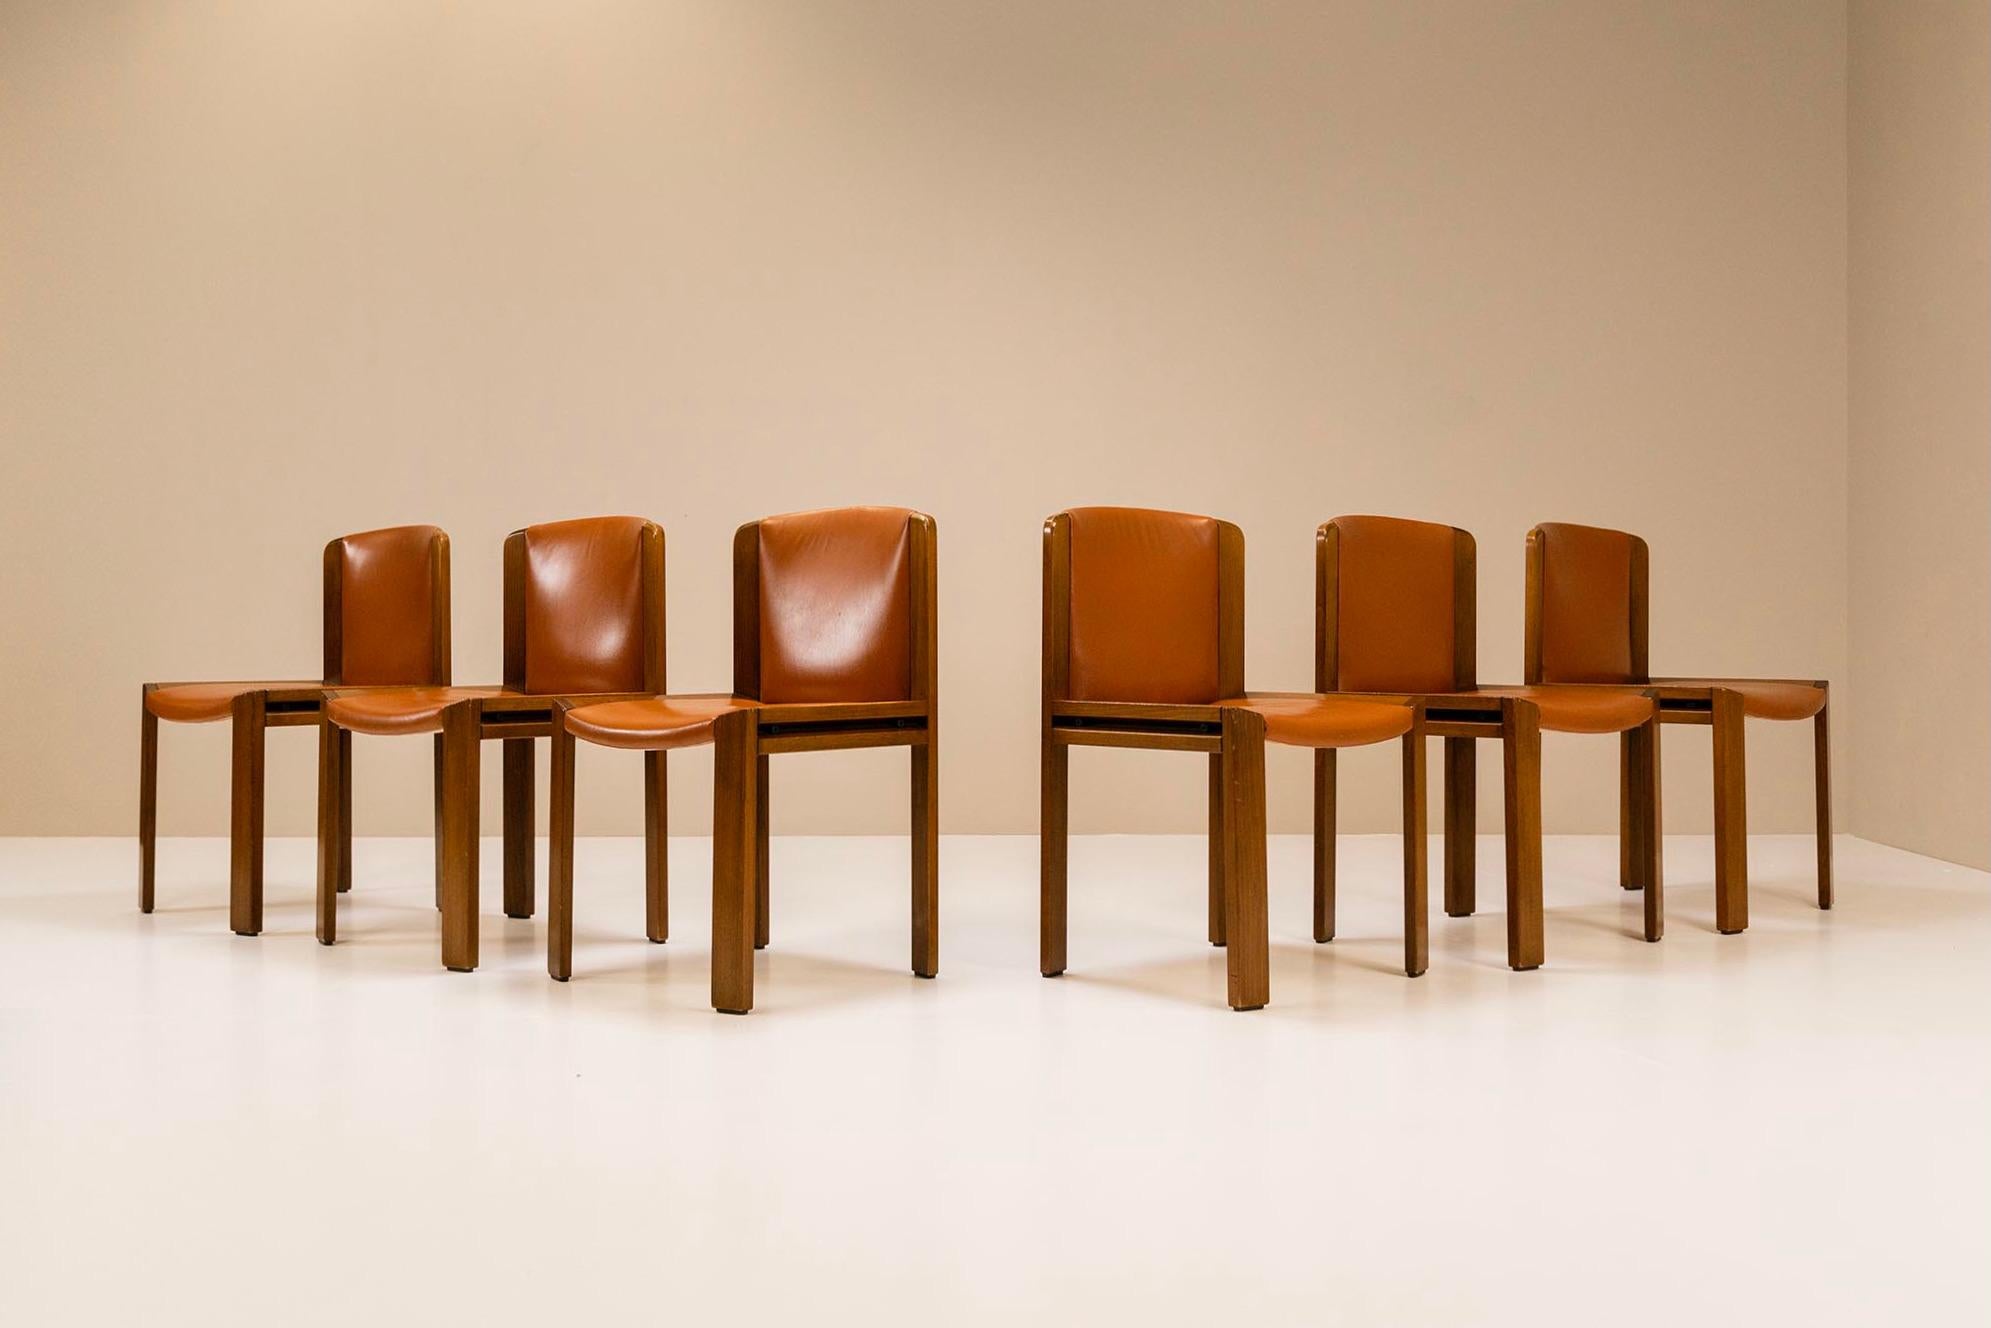 Ein sehr schönes Set von sechs Stühlen des Modells 300, das Joe Colombo 1965 für den italienischen Hersteller Pozzi entworfen hat. Colombo war überzeugt, dass die Funktionalität an erster Stelle stehen sollte, und das Ergebnis war eine vollständige